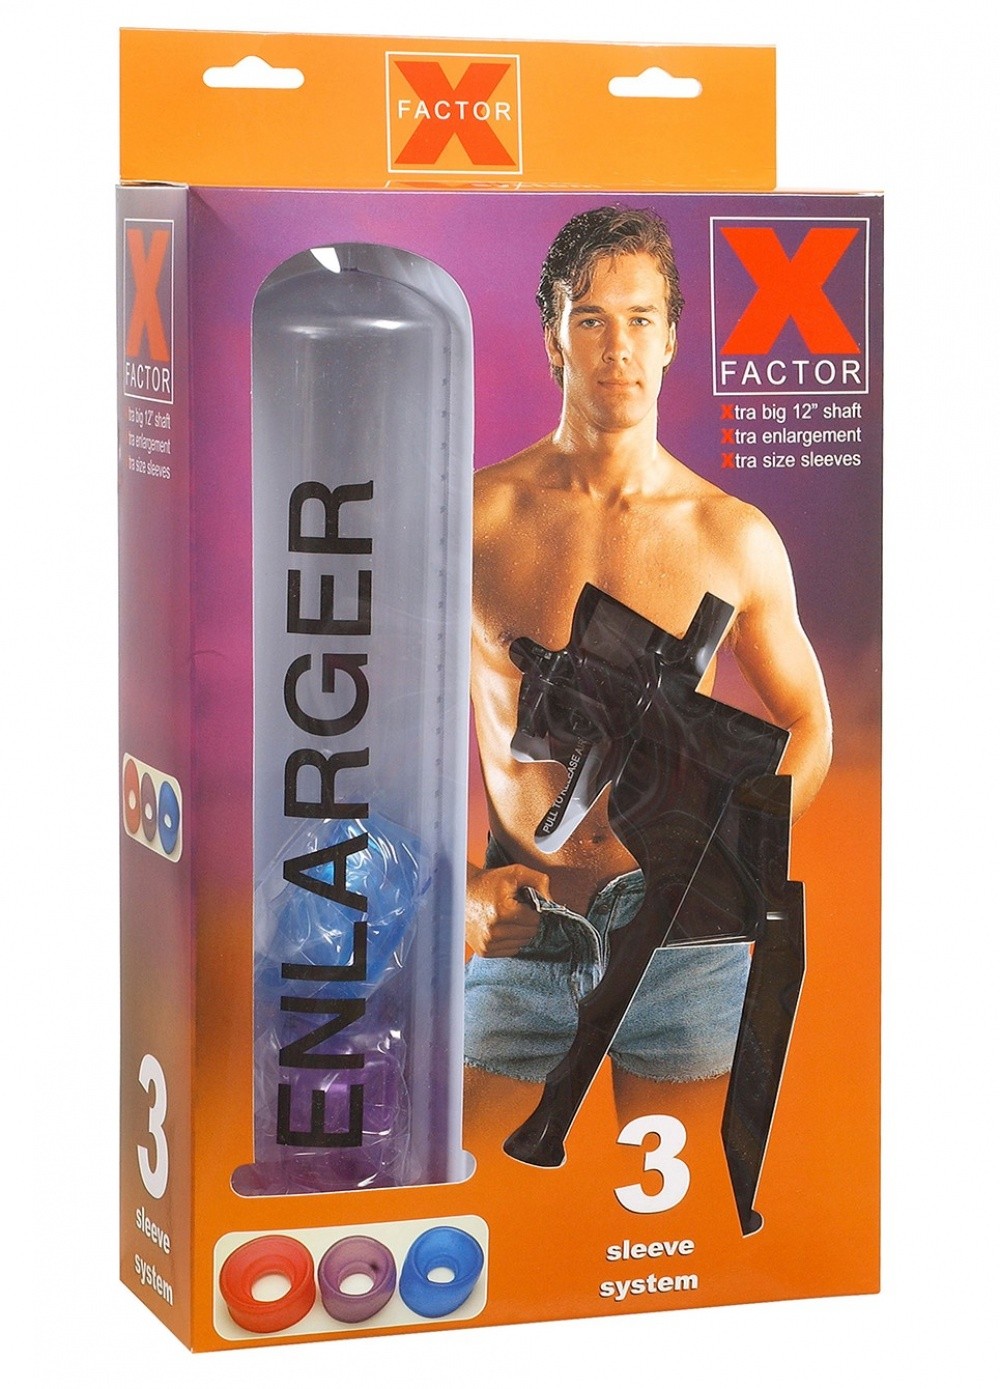 Pompe développeur pénis X Factor Enlarger Pump taille XL